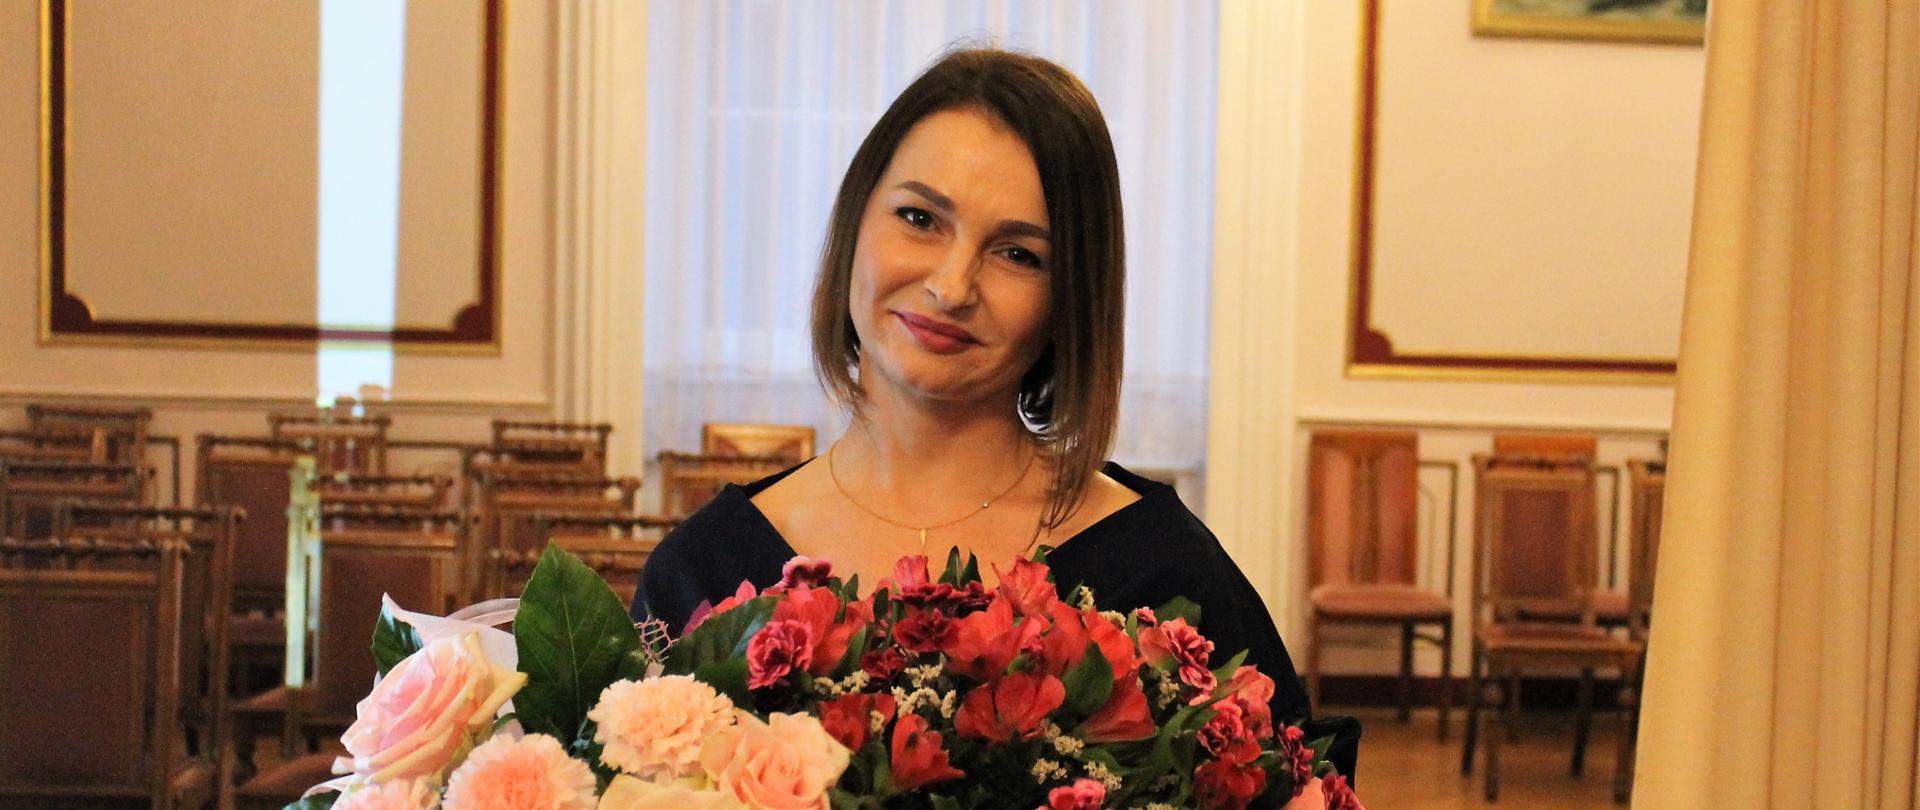 Ewa Bączkowska - Skarbnik Gminy Świerklaniec - młoda kobieta o ciemnych włosach do ramion, uśmiechnięta z dwoma bukietami kwiatów w dłoniach